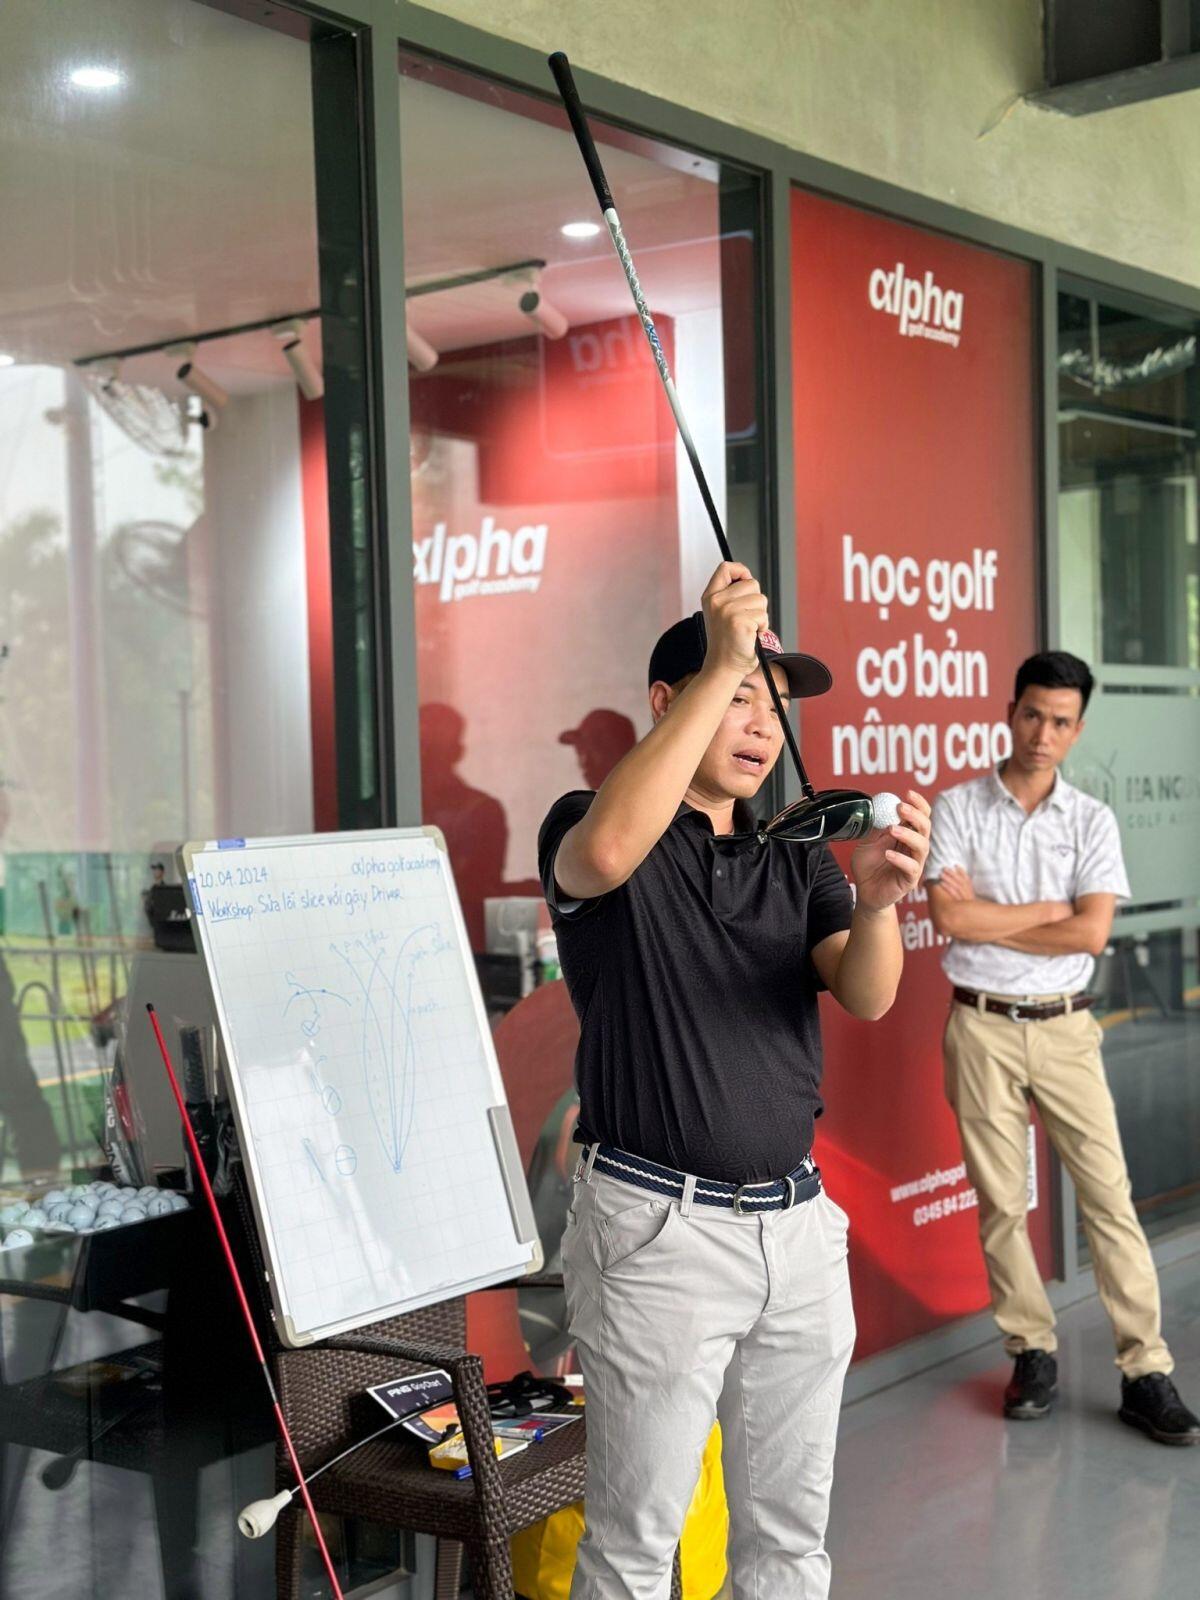 HLV Phùng Mạnh Lộc: Cơ hội phát triển về nhân sự ngành golf trong tương lai đầy triển vọng